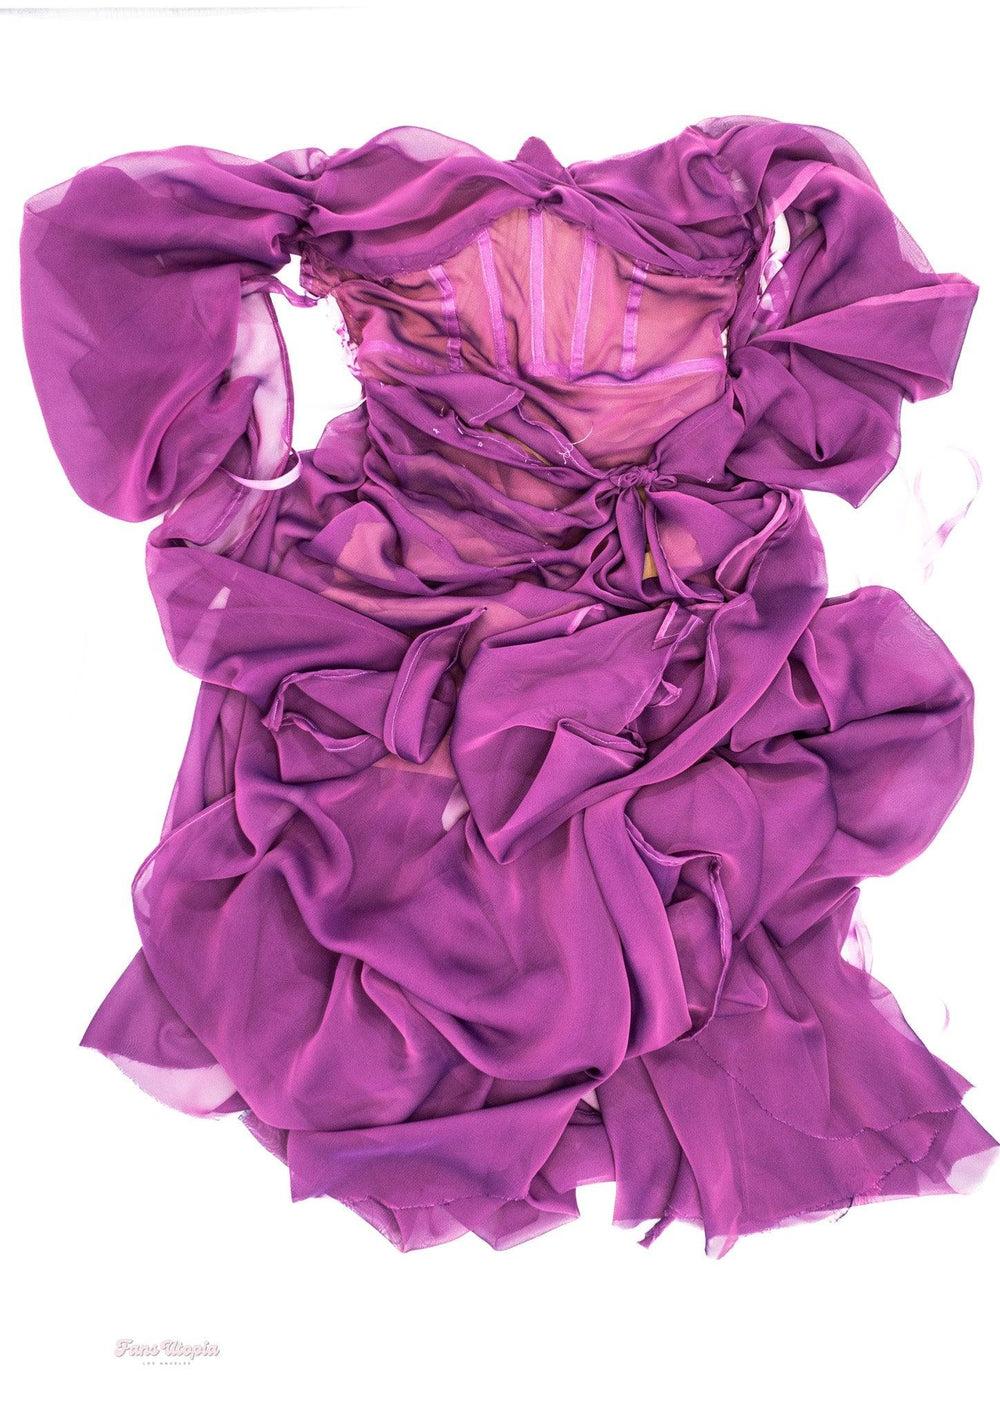 Cherie DeVille AVN Unwashed Purple Dress - FANS UTOPIA